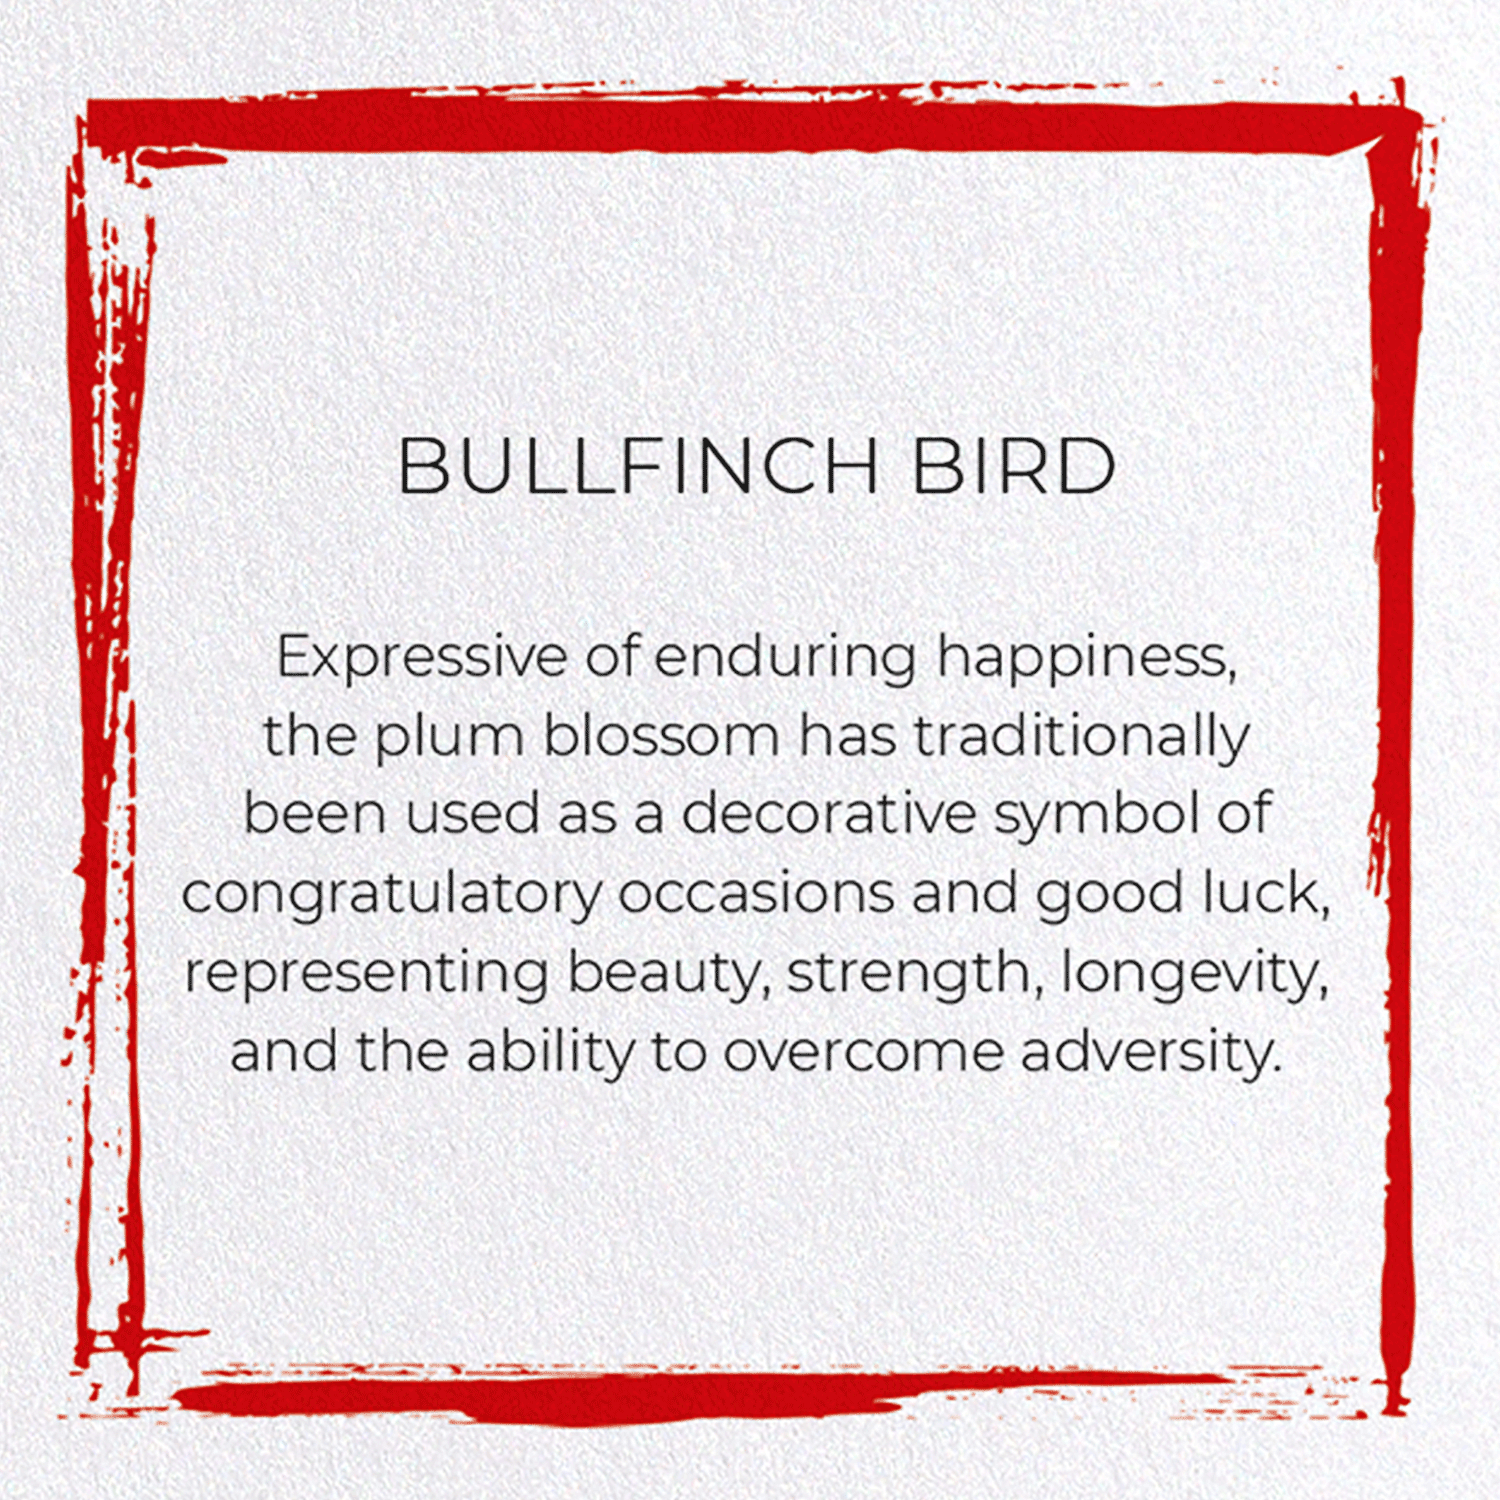 BULLFINCH BIRD